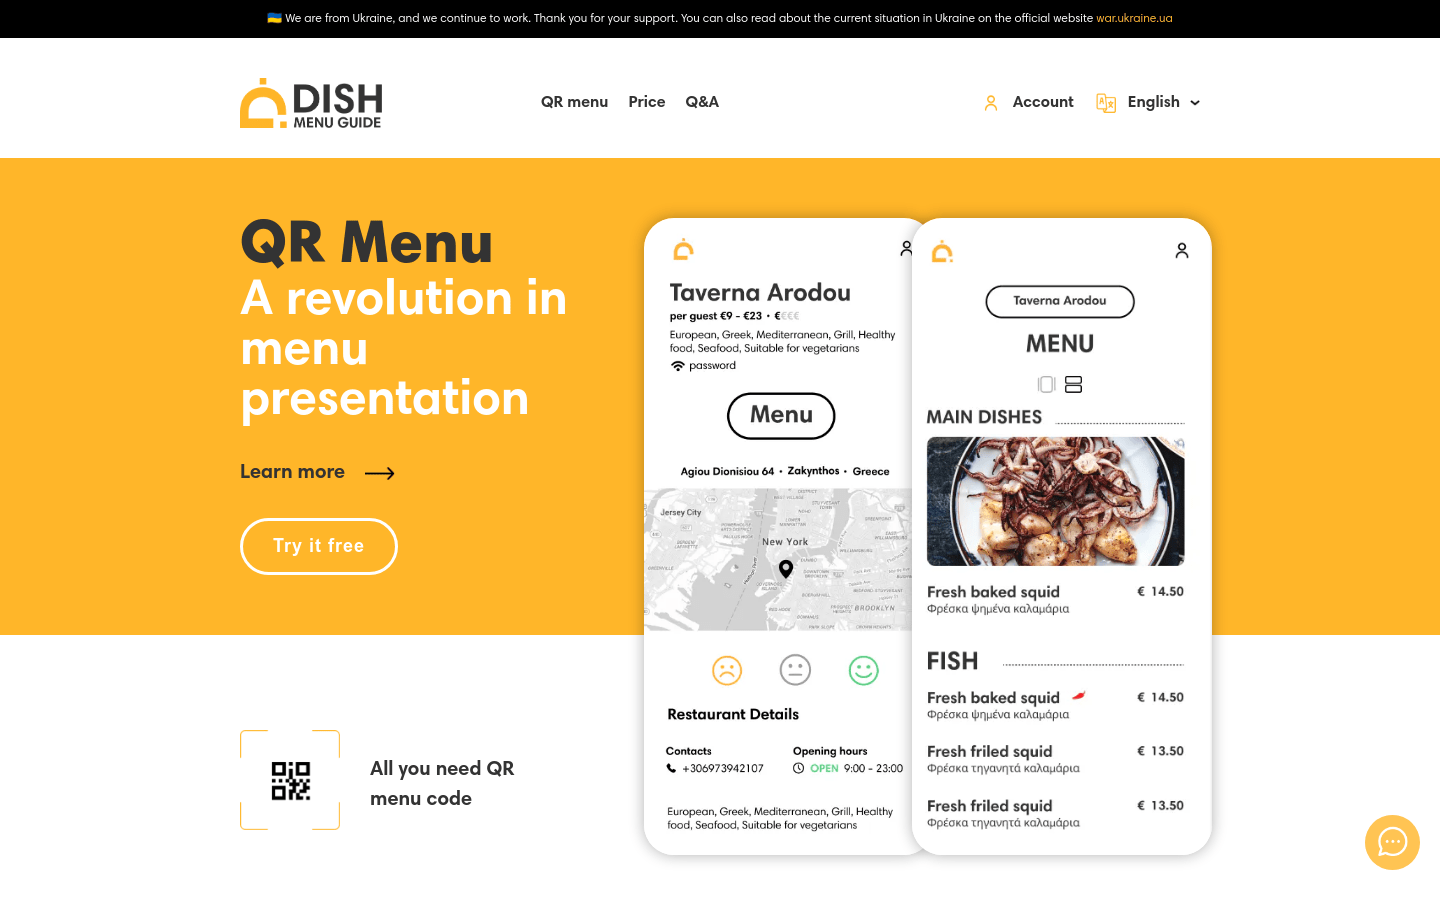 Dish menu Guide